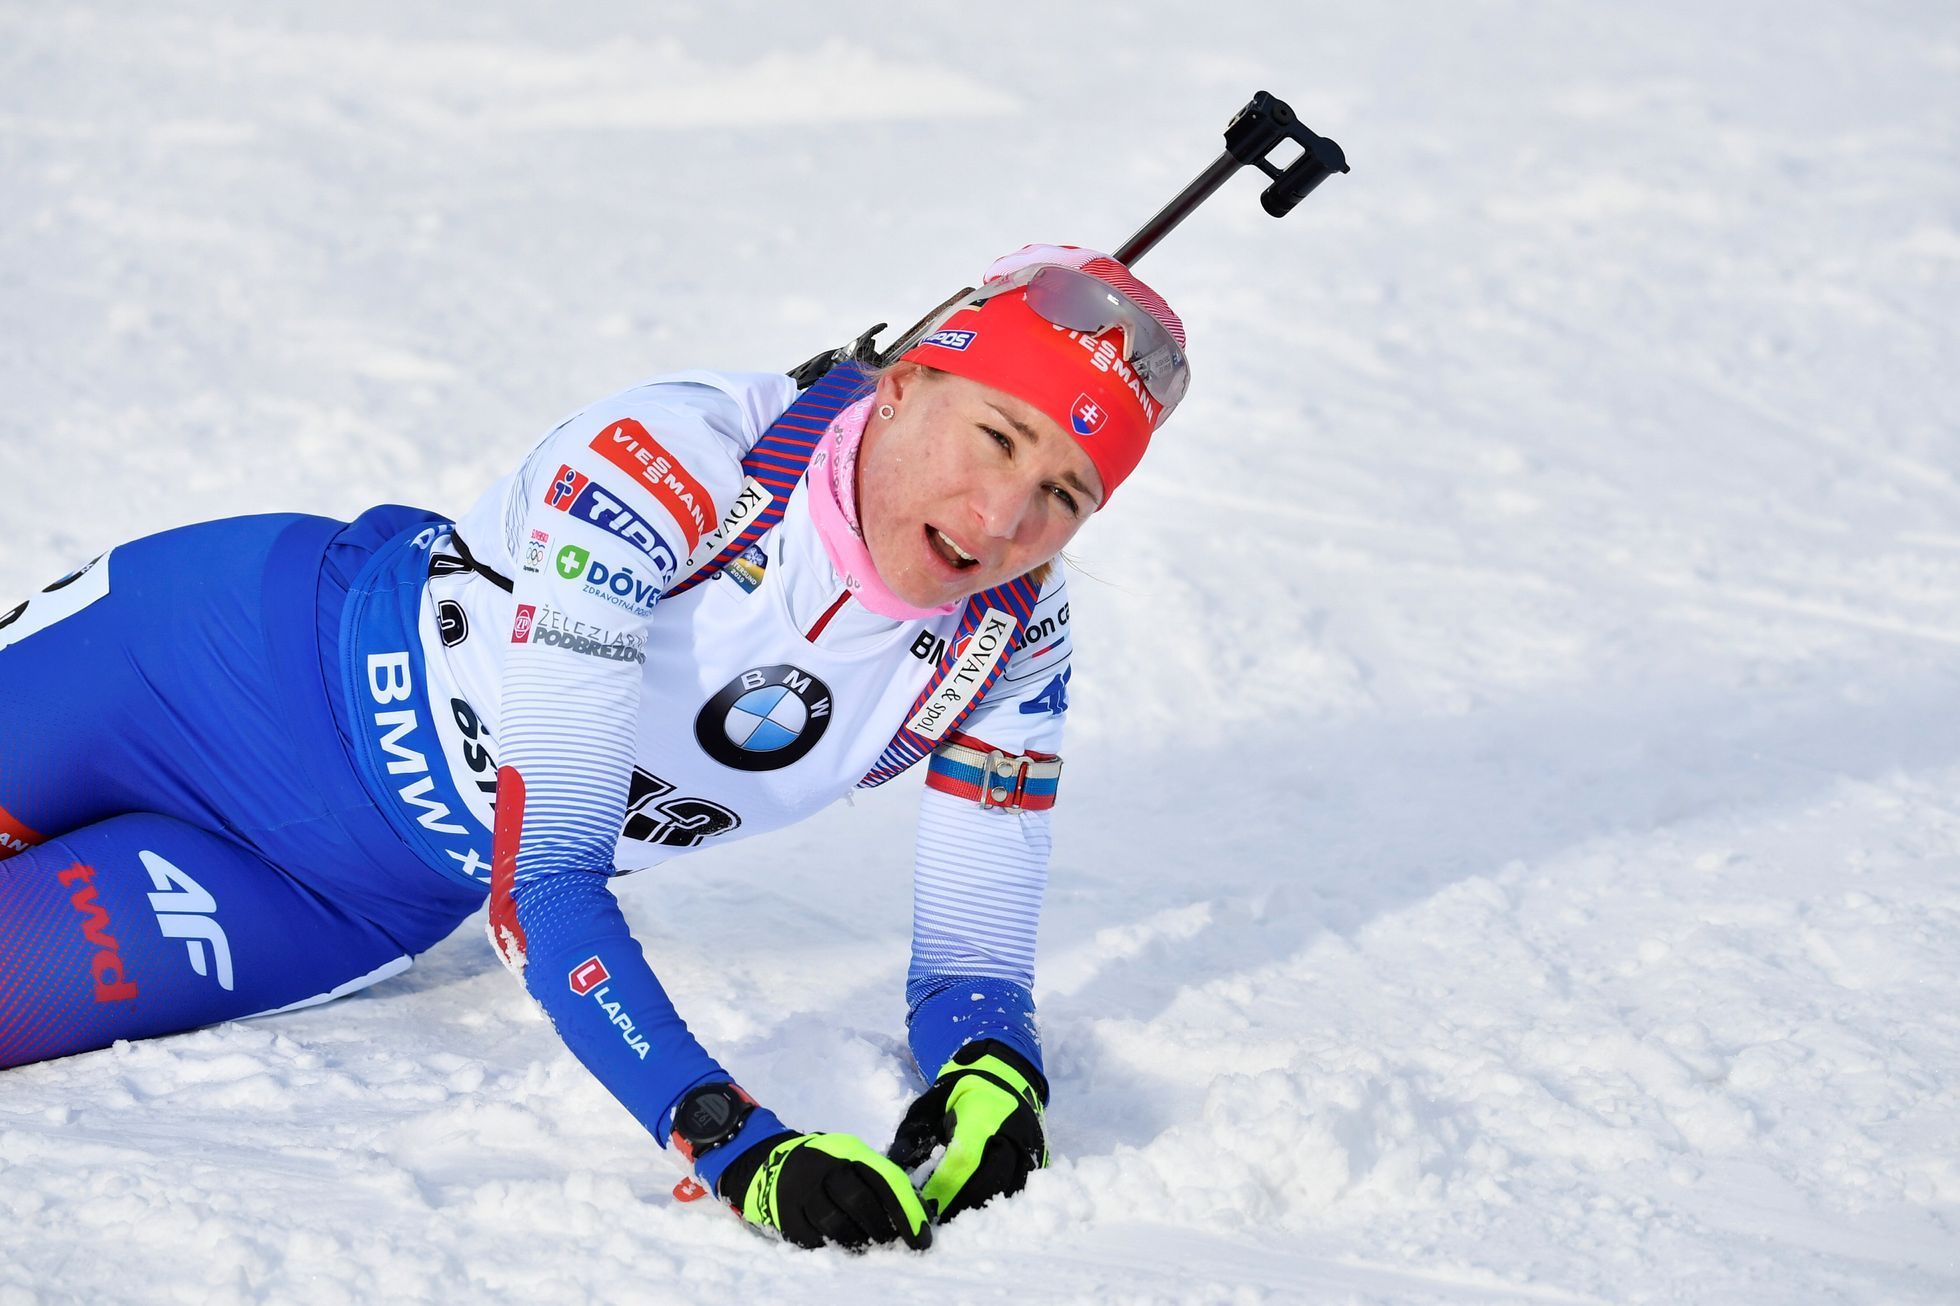 Anastasija Kuzminová, vítězka sprintu na MS 2019